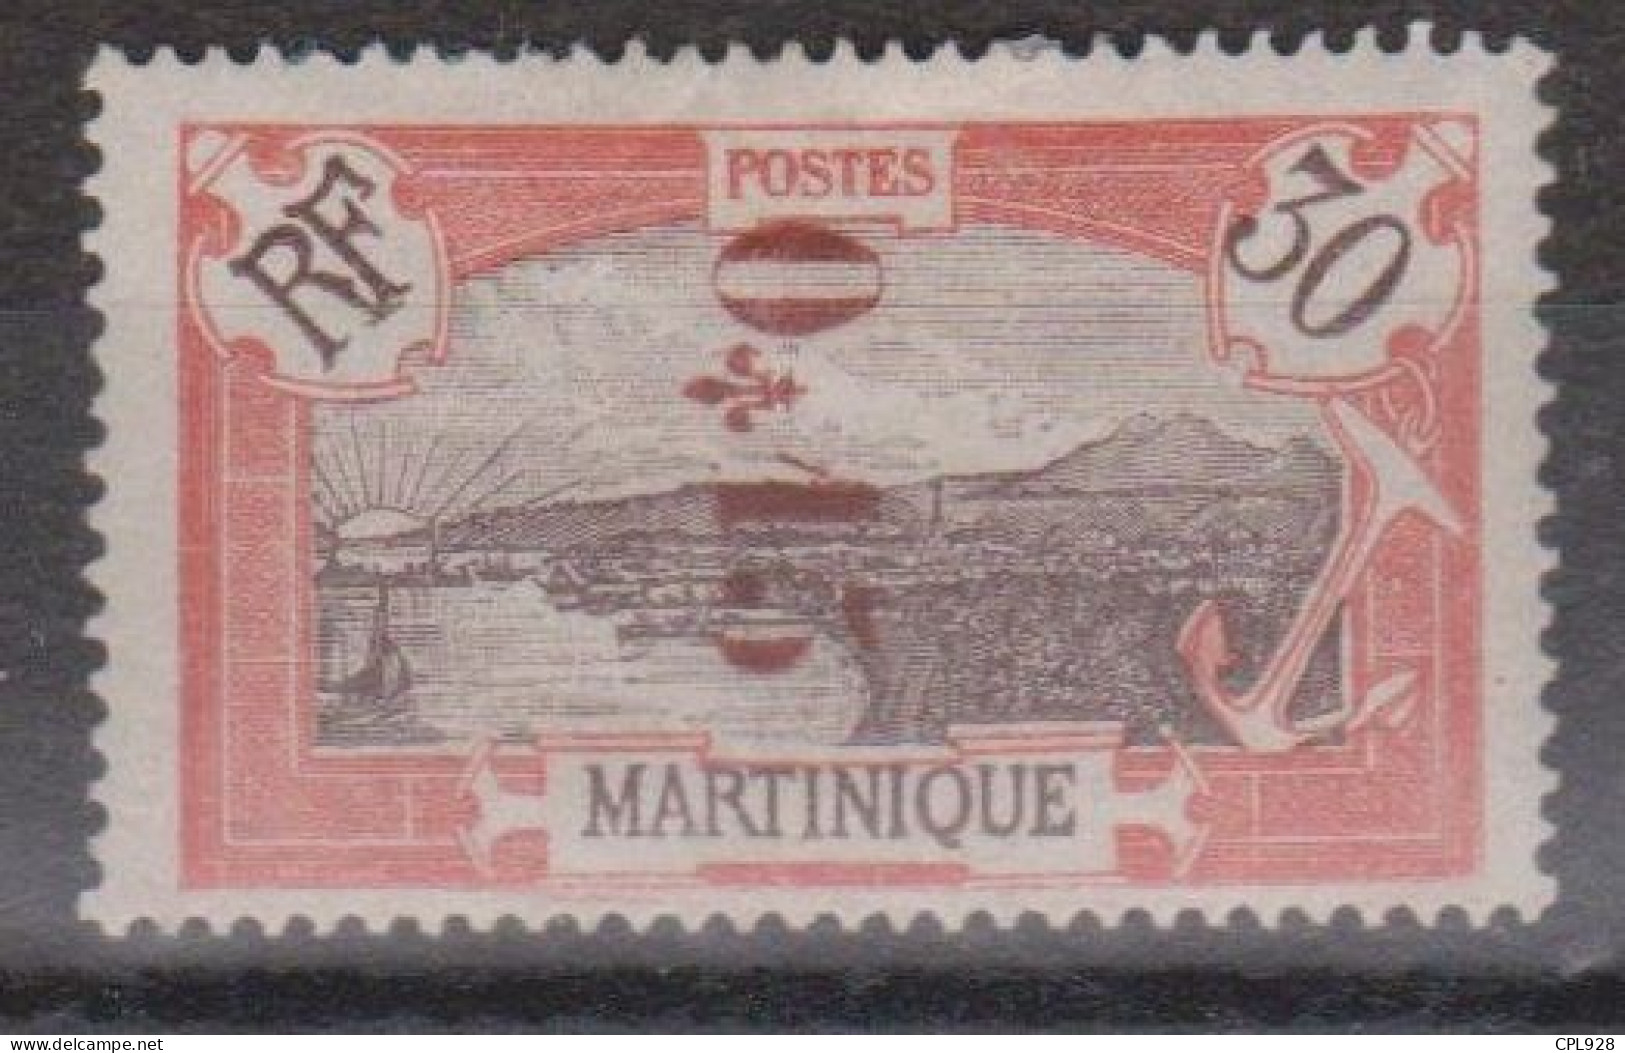 Martinique N° 108a Avec Charnière Surcharge Renversée - Unused Stamps